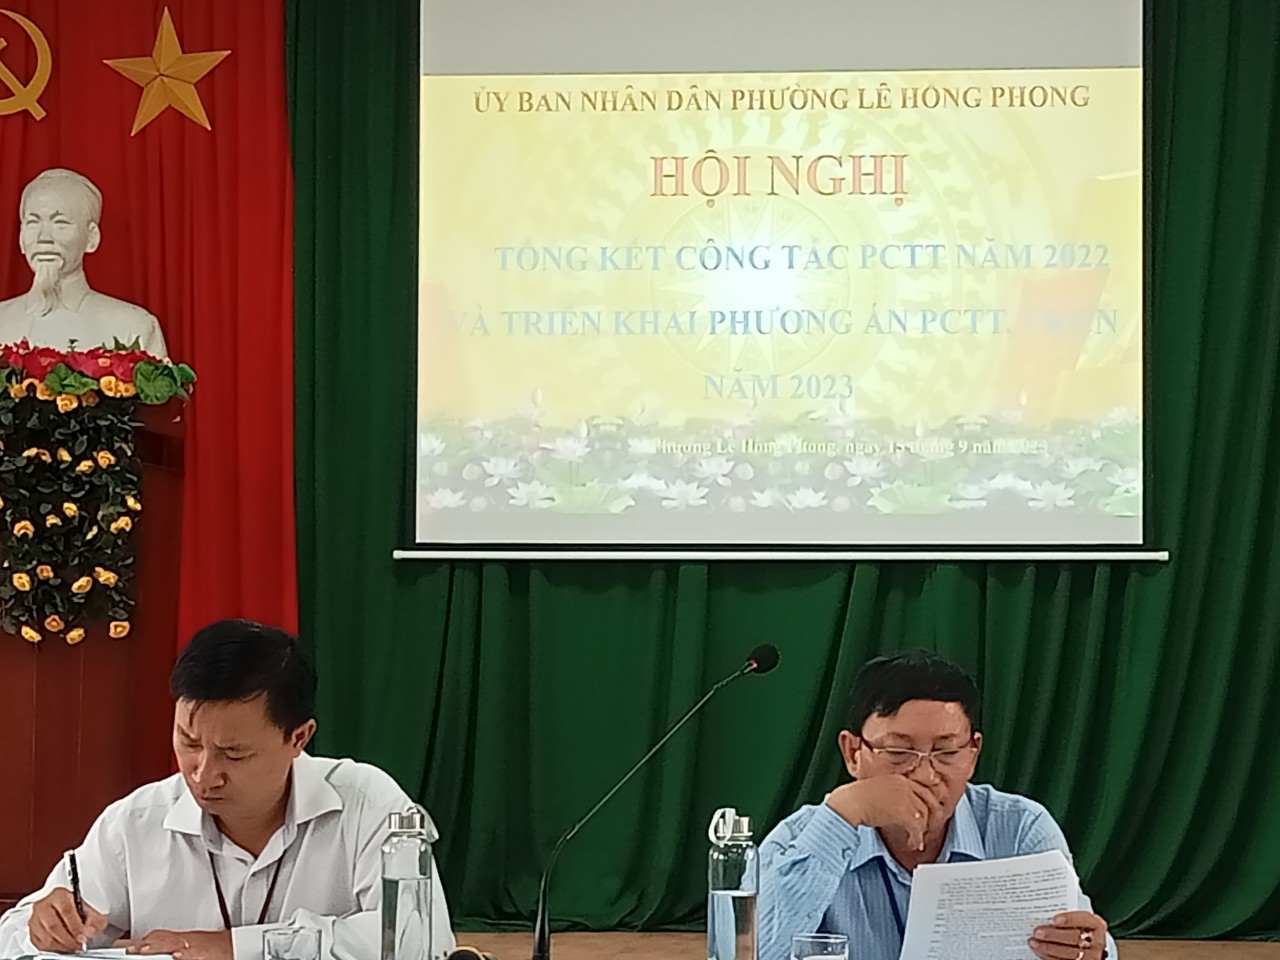 UBND phường Lê Hồng Phong tổ chức hội nghị tổng kết công tác phòng chống thiên tai năm 2022 và triển khai phương án phòng chống thiên tai, tìm kiếm cứu nạn năm 2023